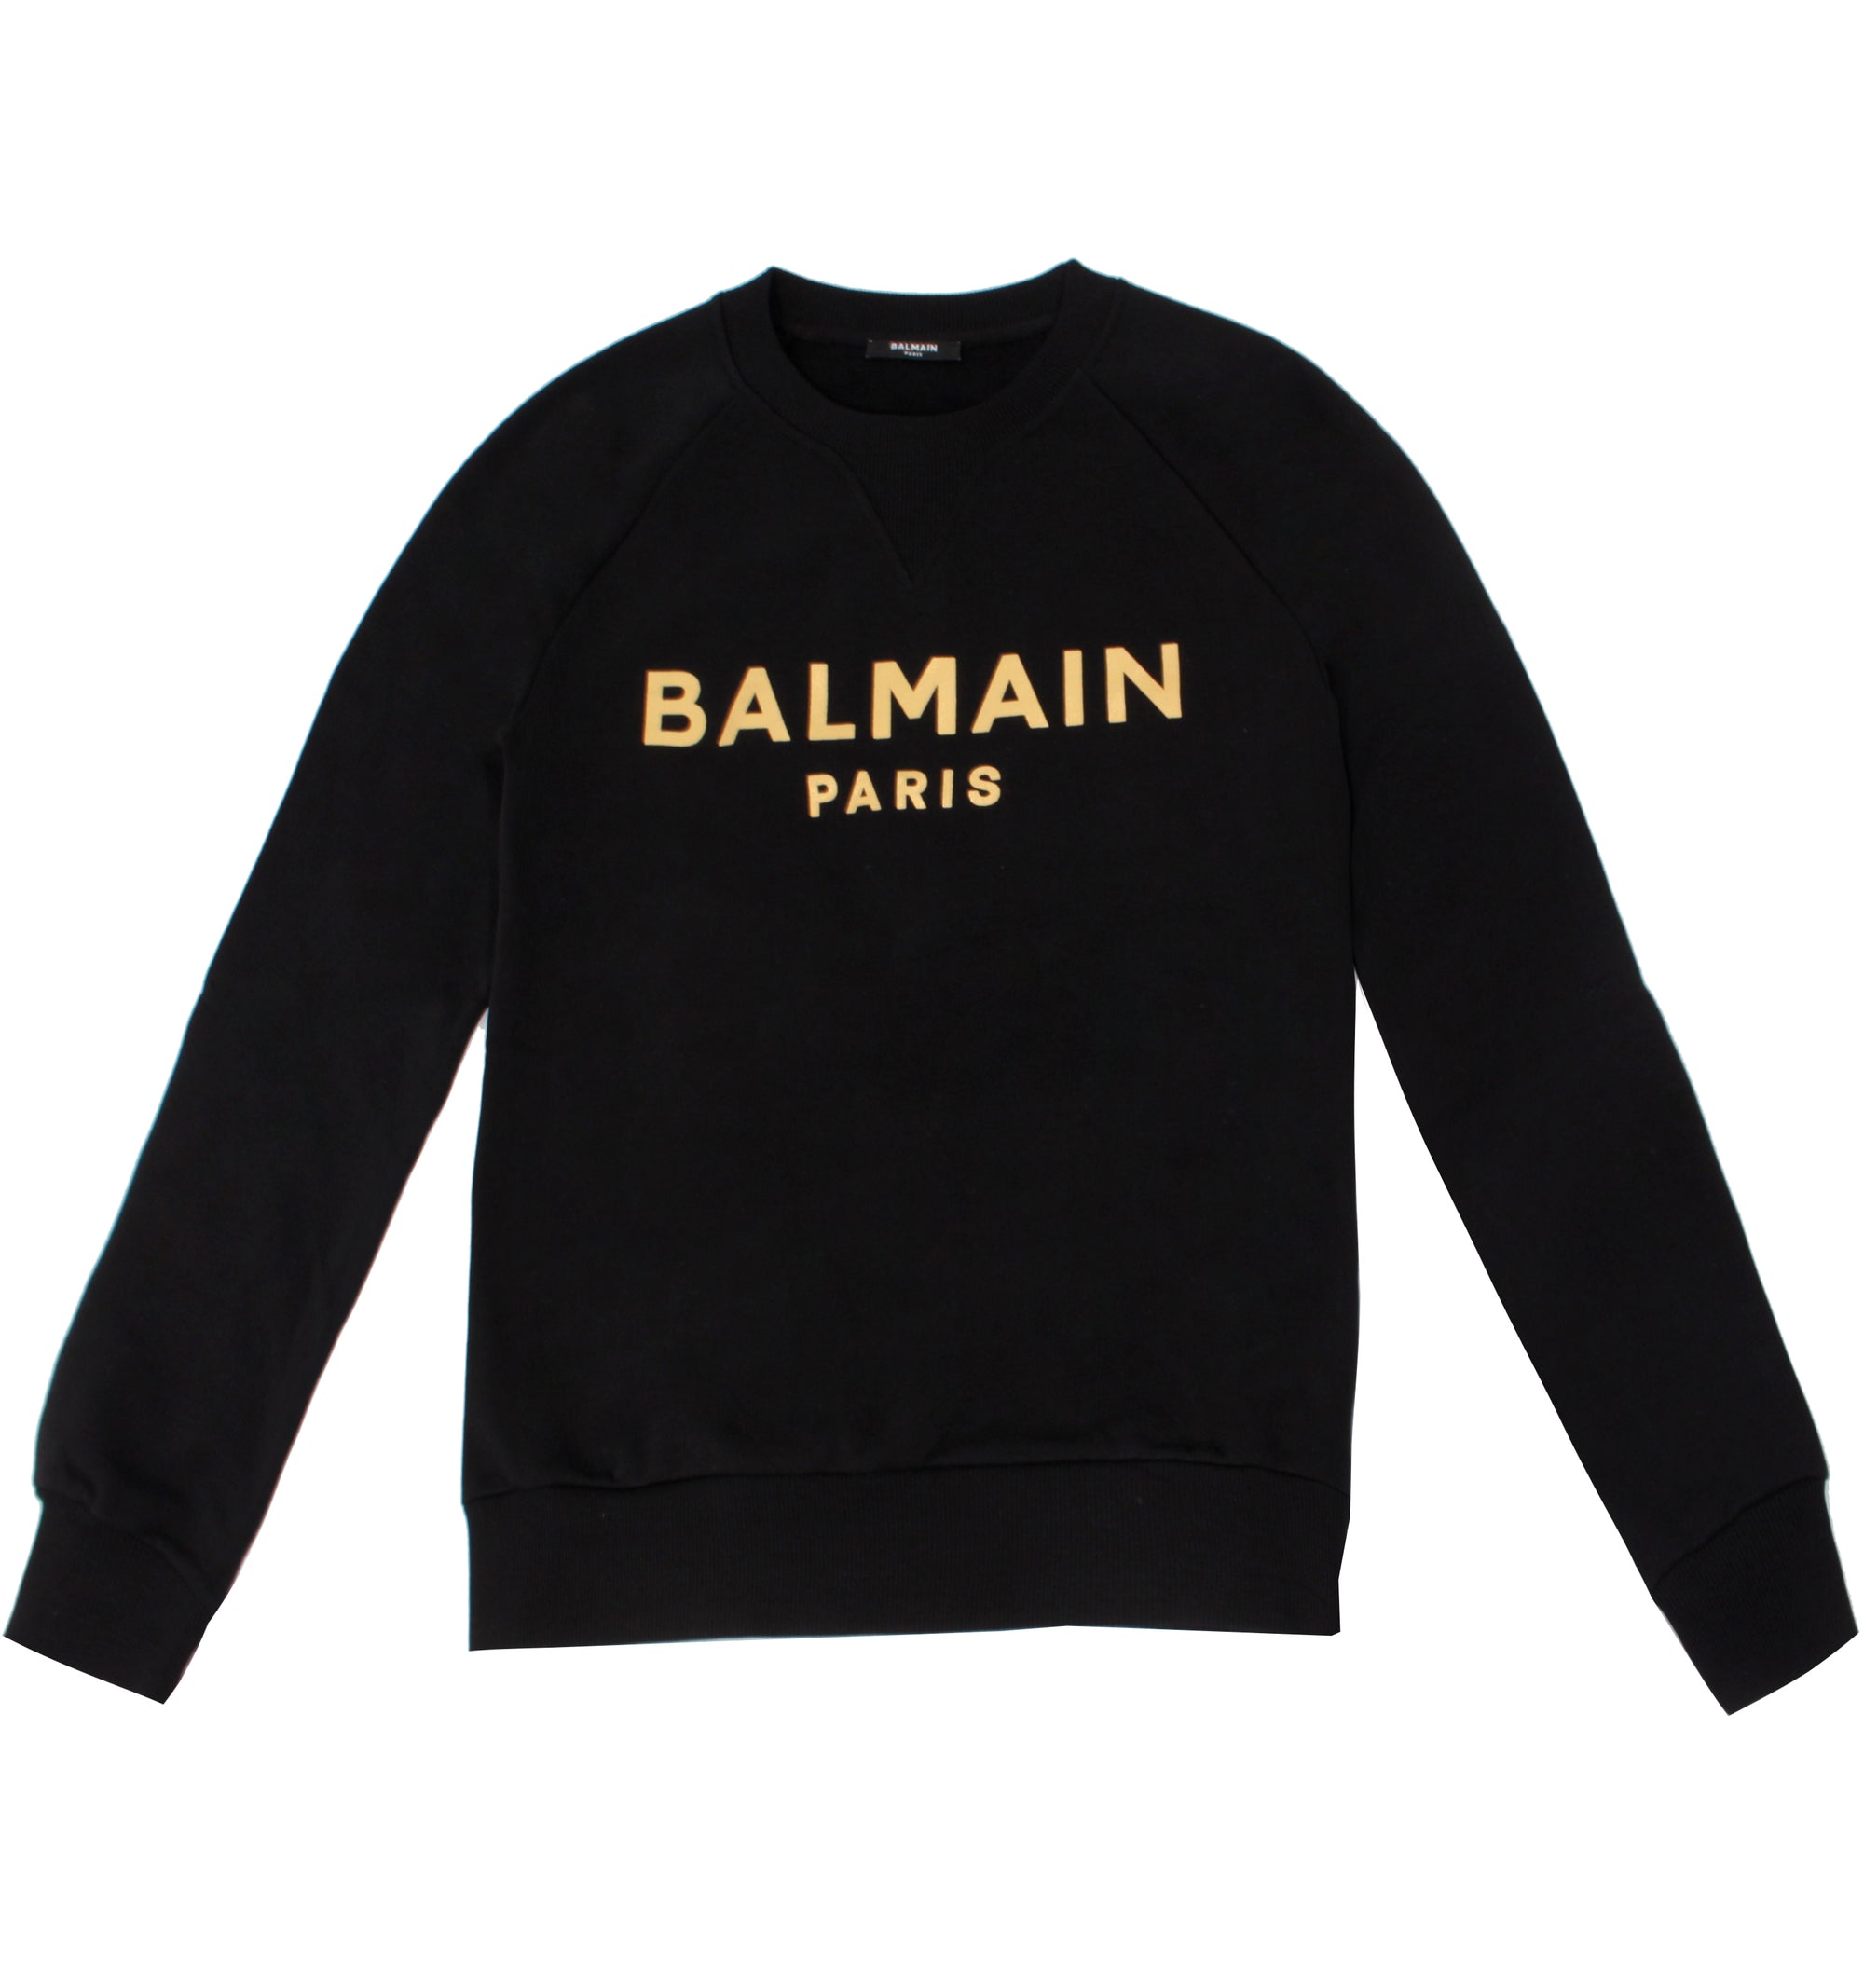 Balmain Foil Printed Sweatshirt - Black & Gold